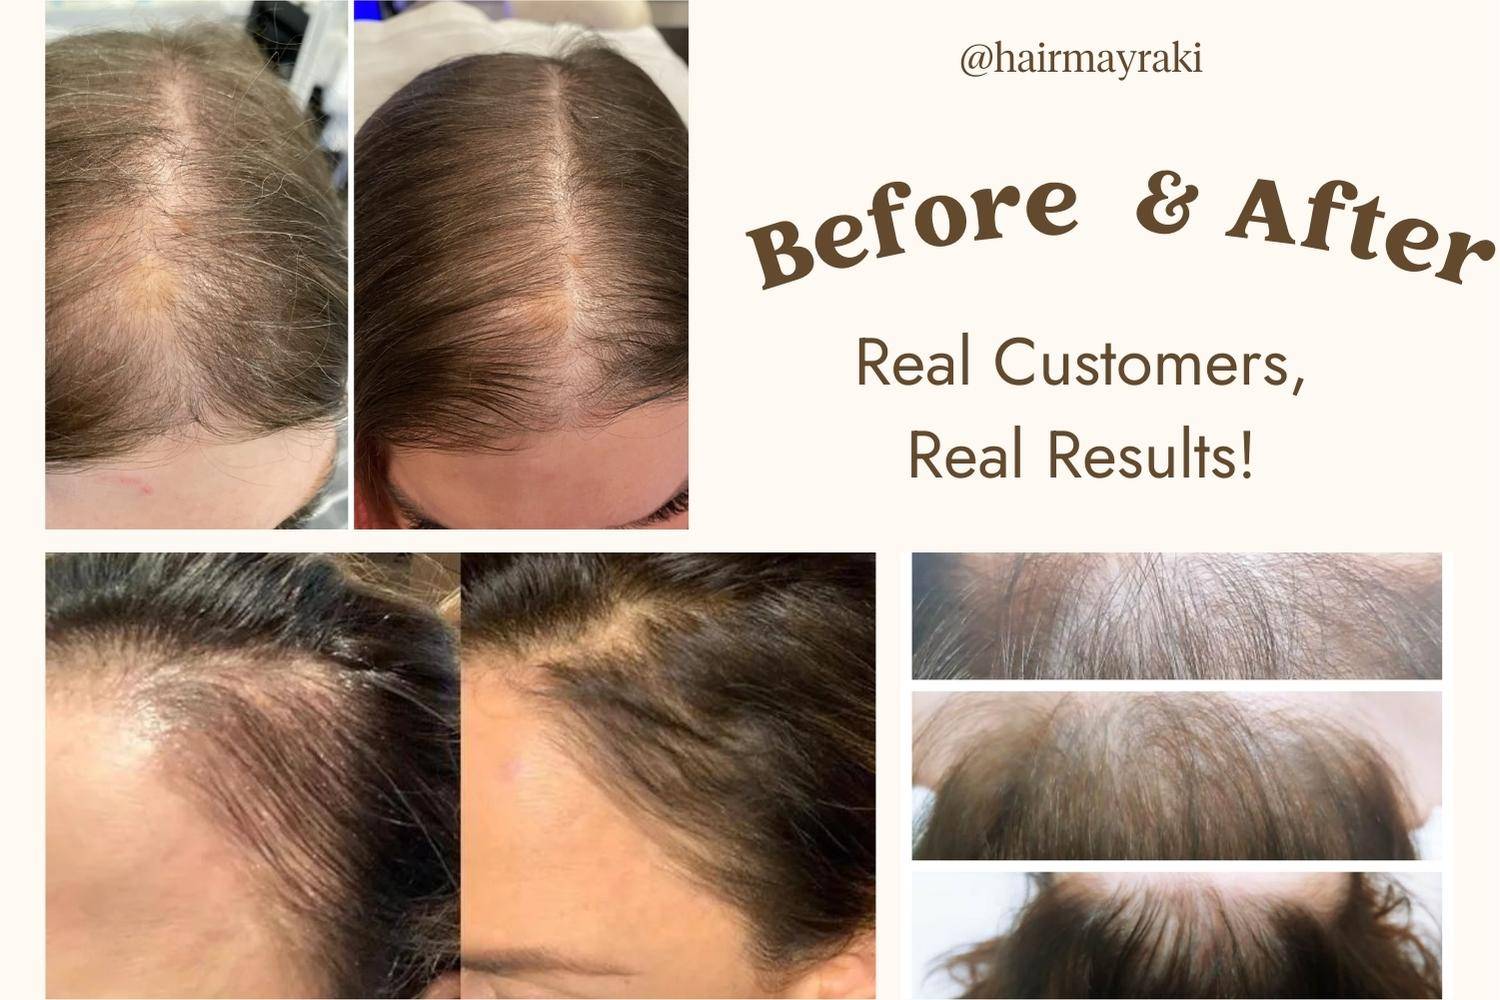 Mayraki_hair_growth_before_after1